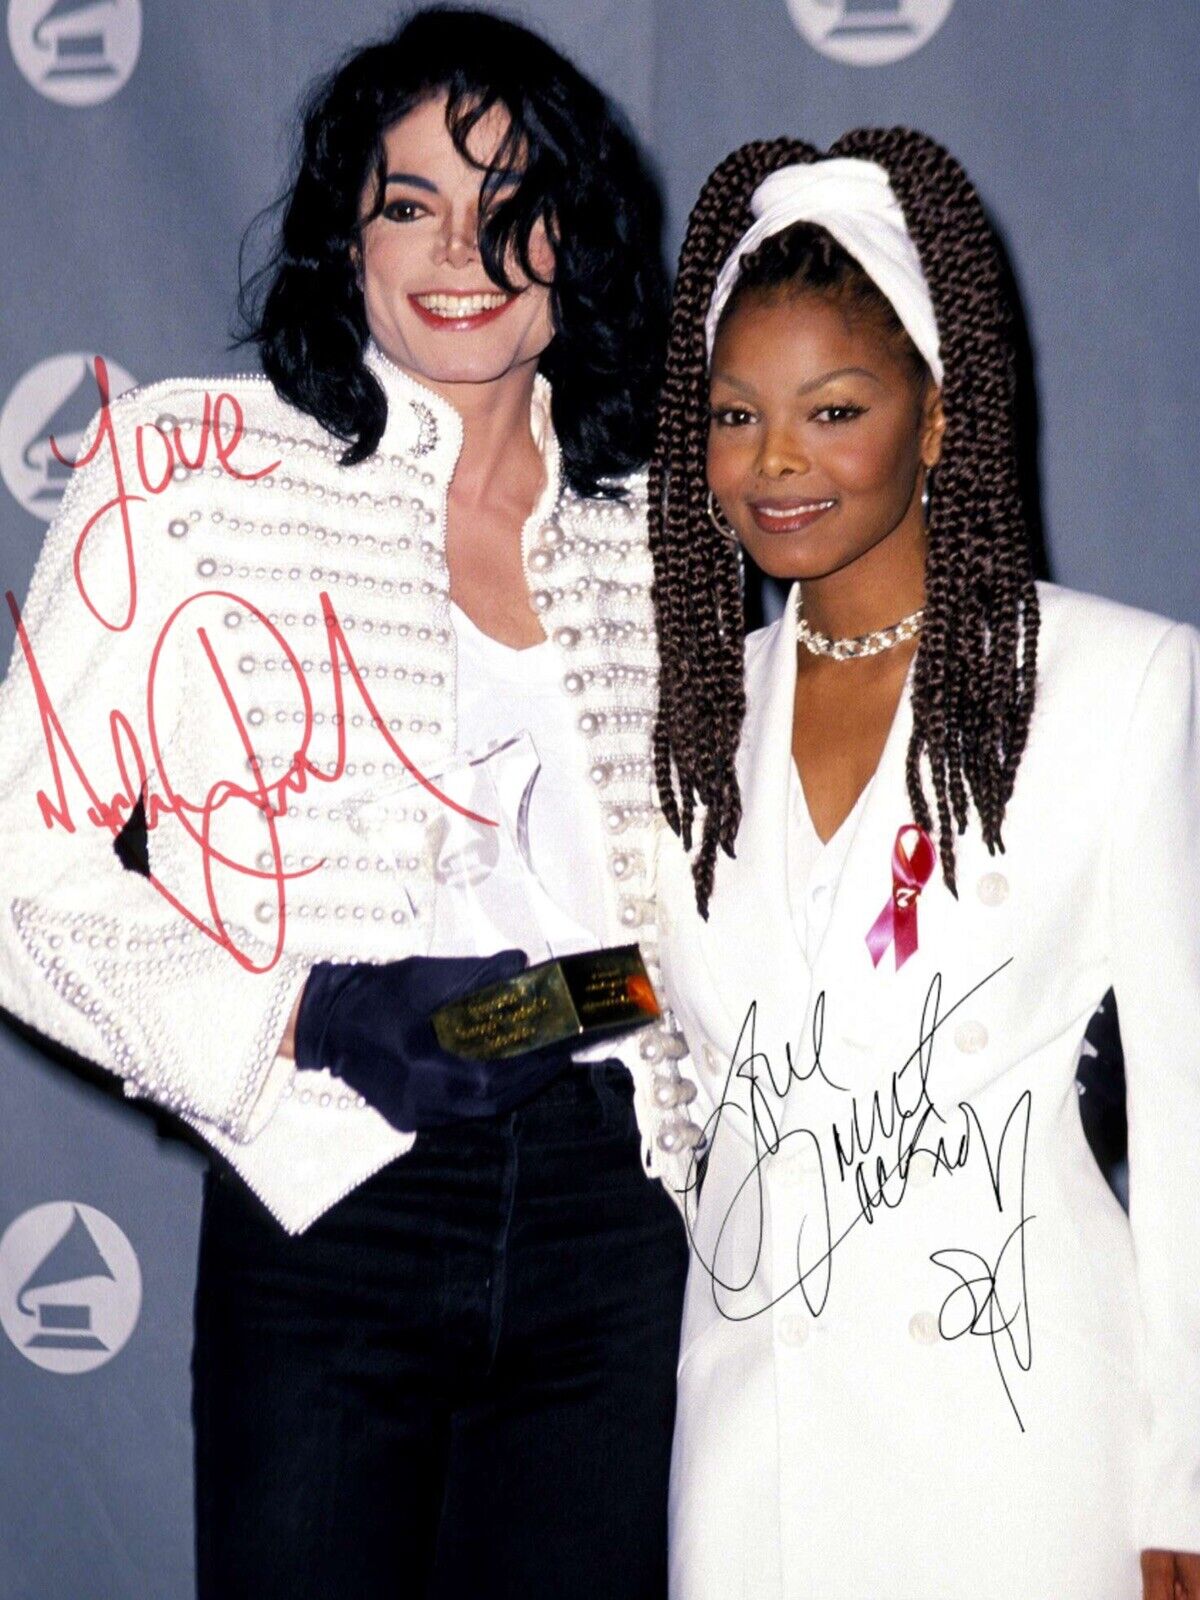 Michael Jackson / Janet Jackson Autographed Signed 8.5 X 11 Photo Reprint